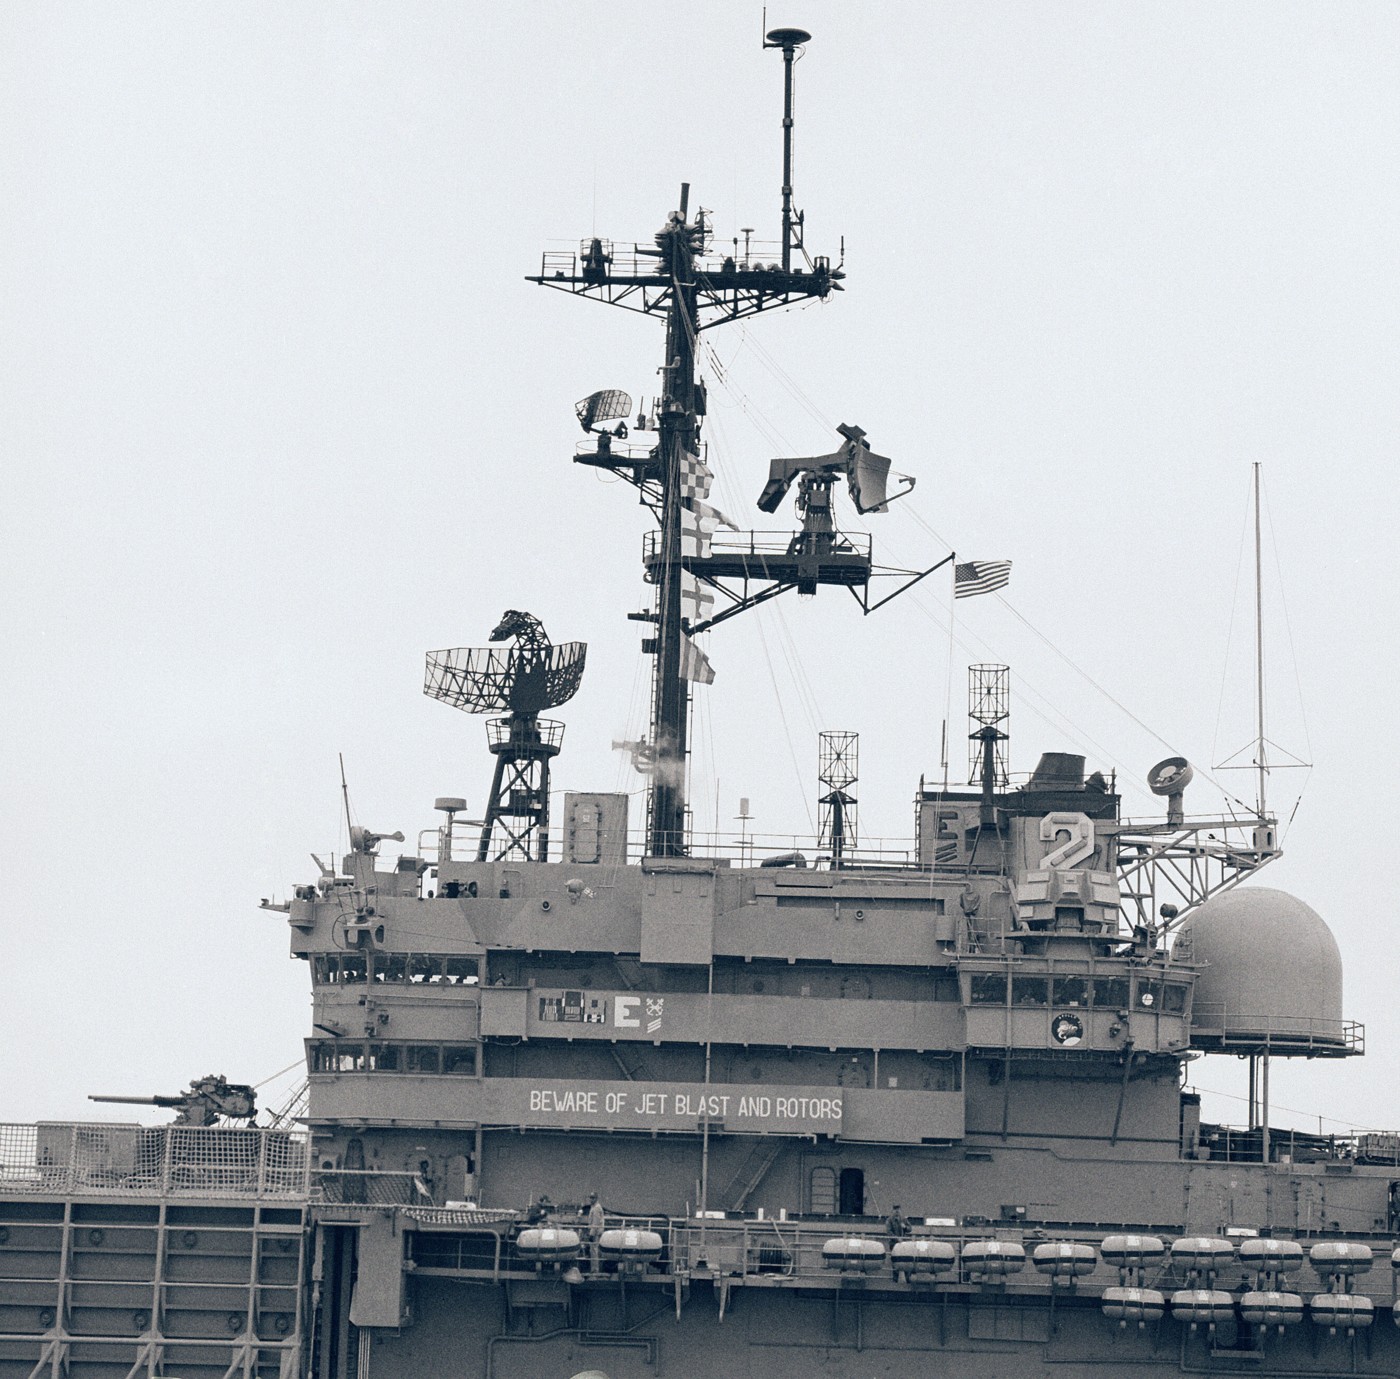 lph-2 uss iwo jima class amphibious assault ship landing platform helicopter us navy 41